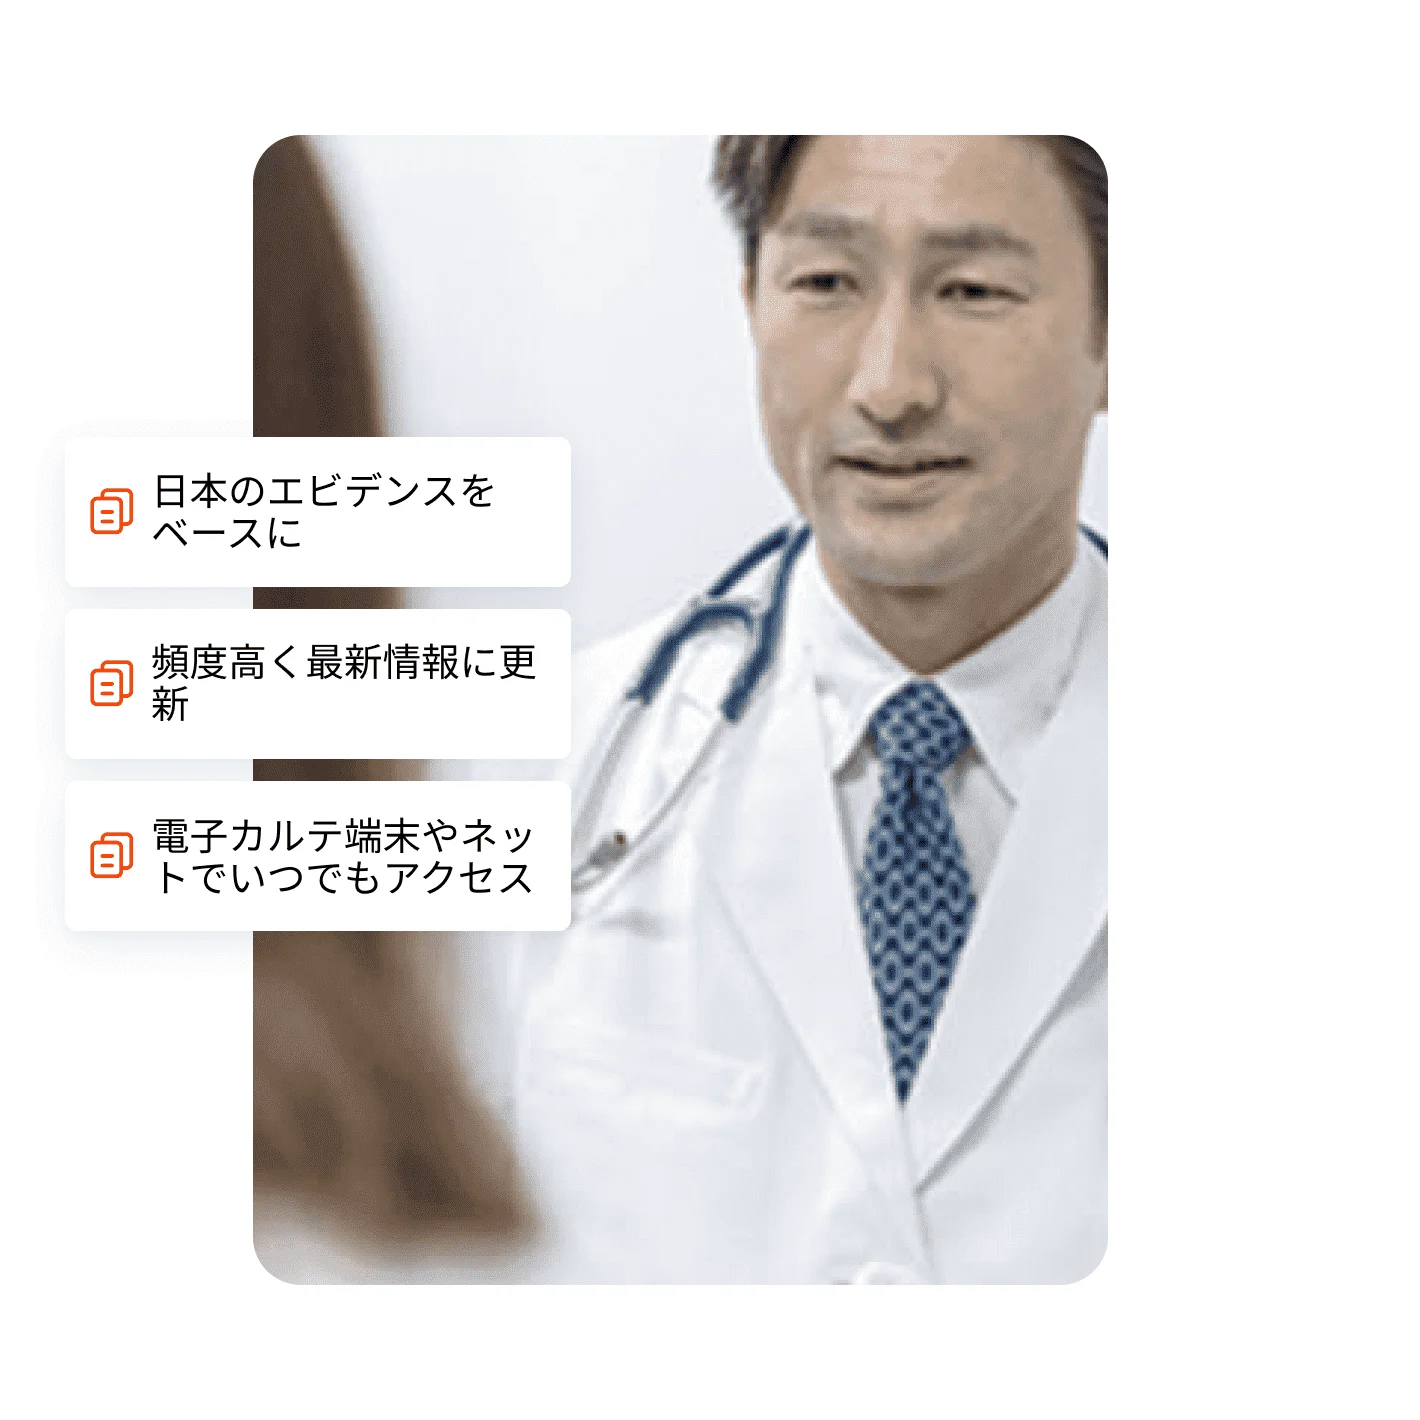 日本人医師